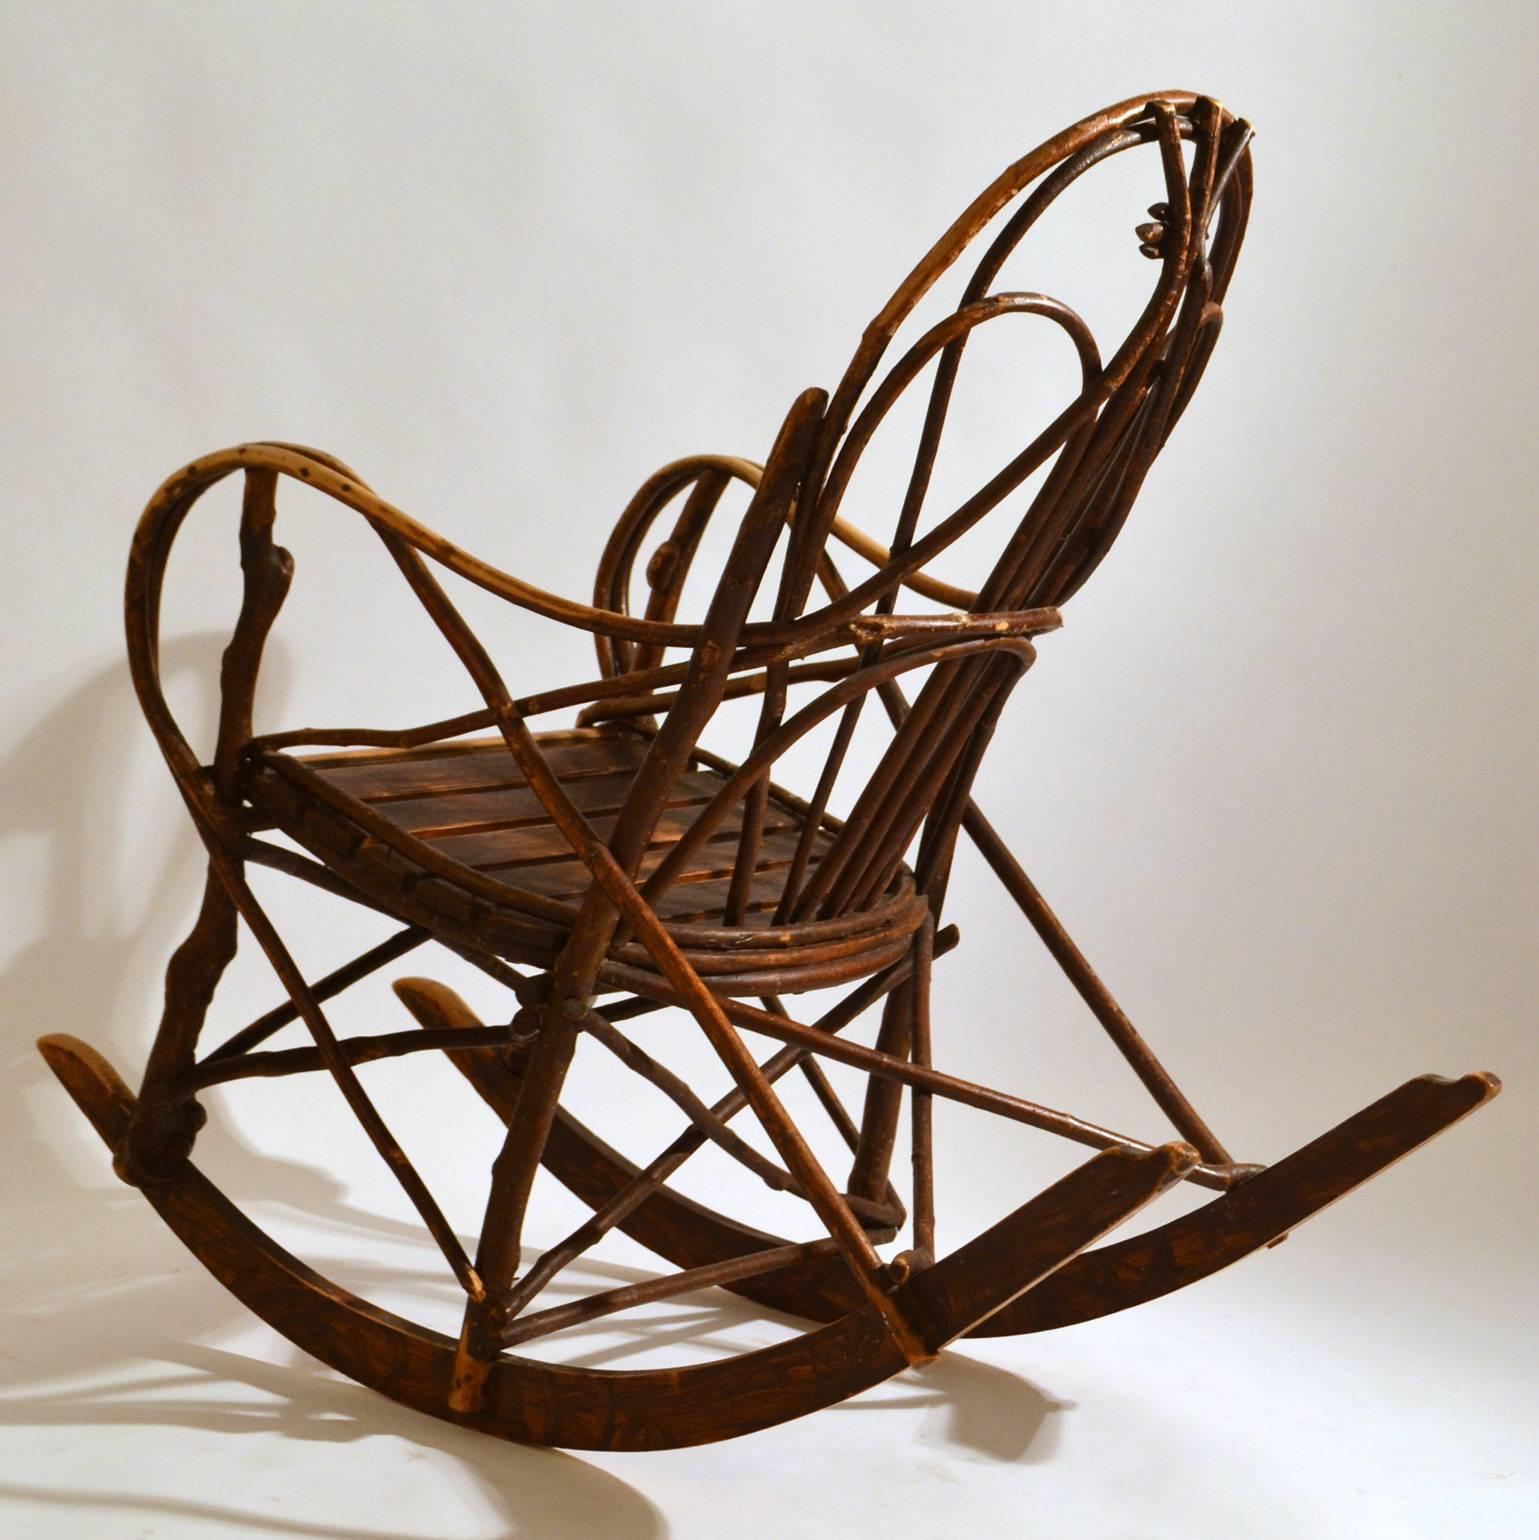 Scandinavian Modern Early 20th Century Scandinavian Rocking Chair Bent Wood Willow